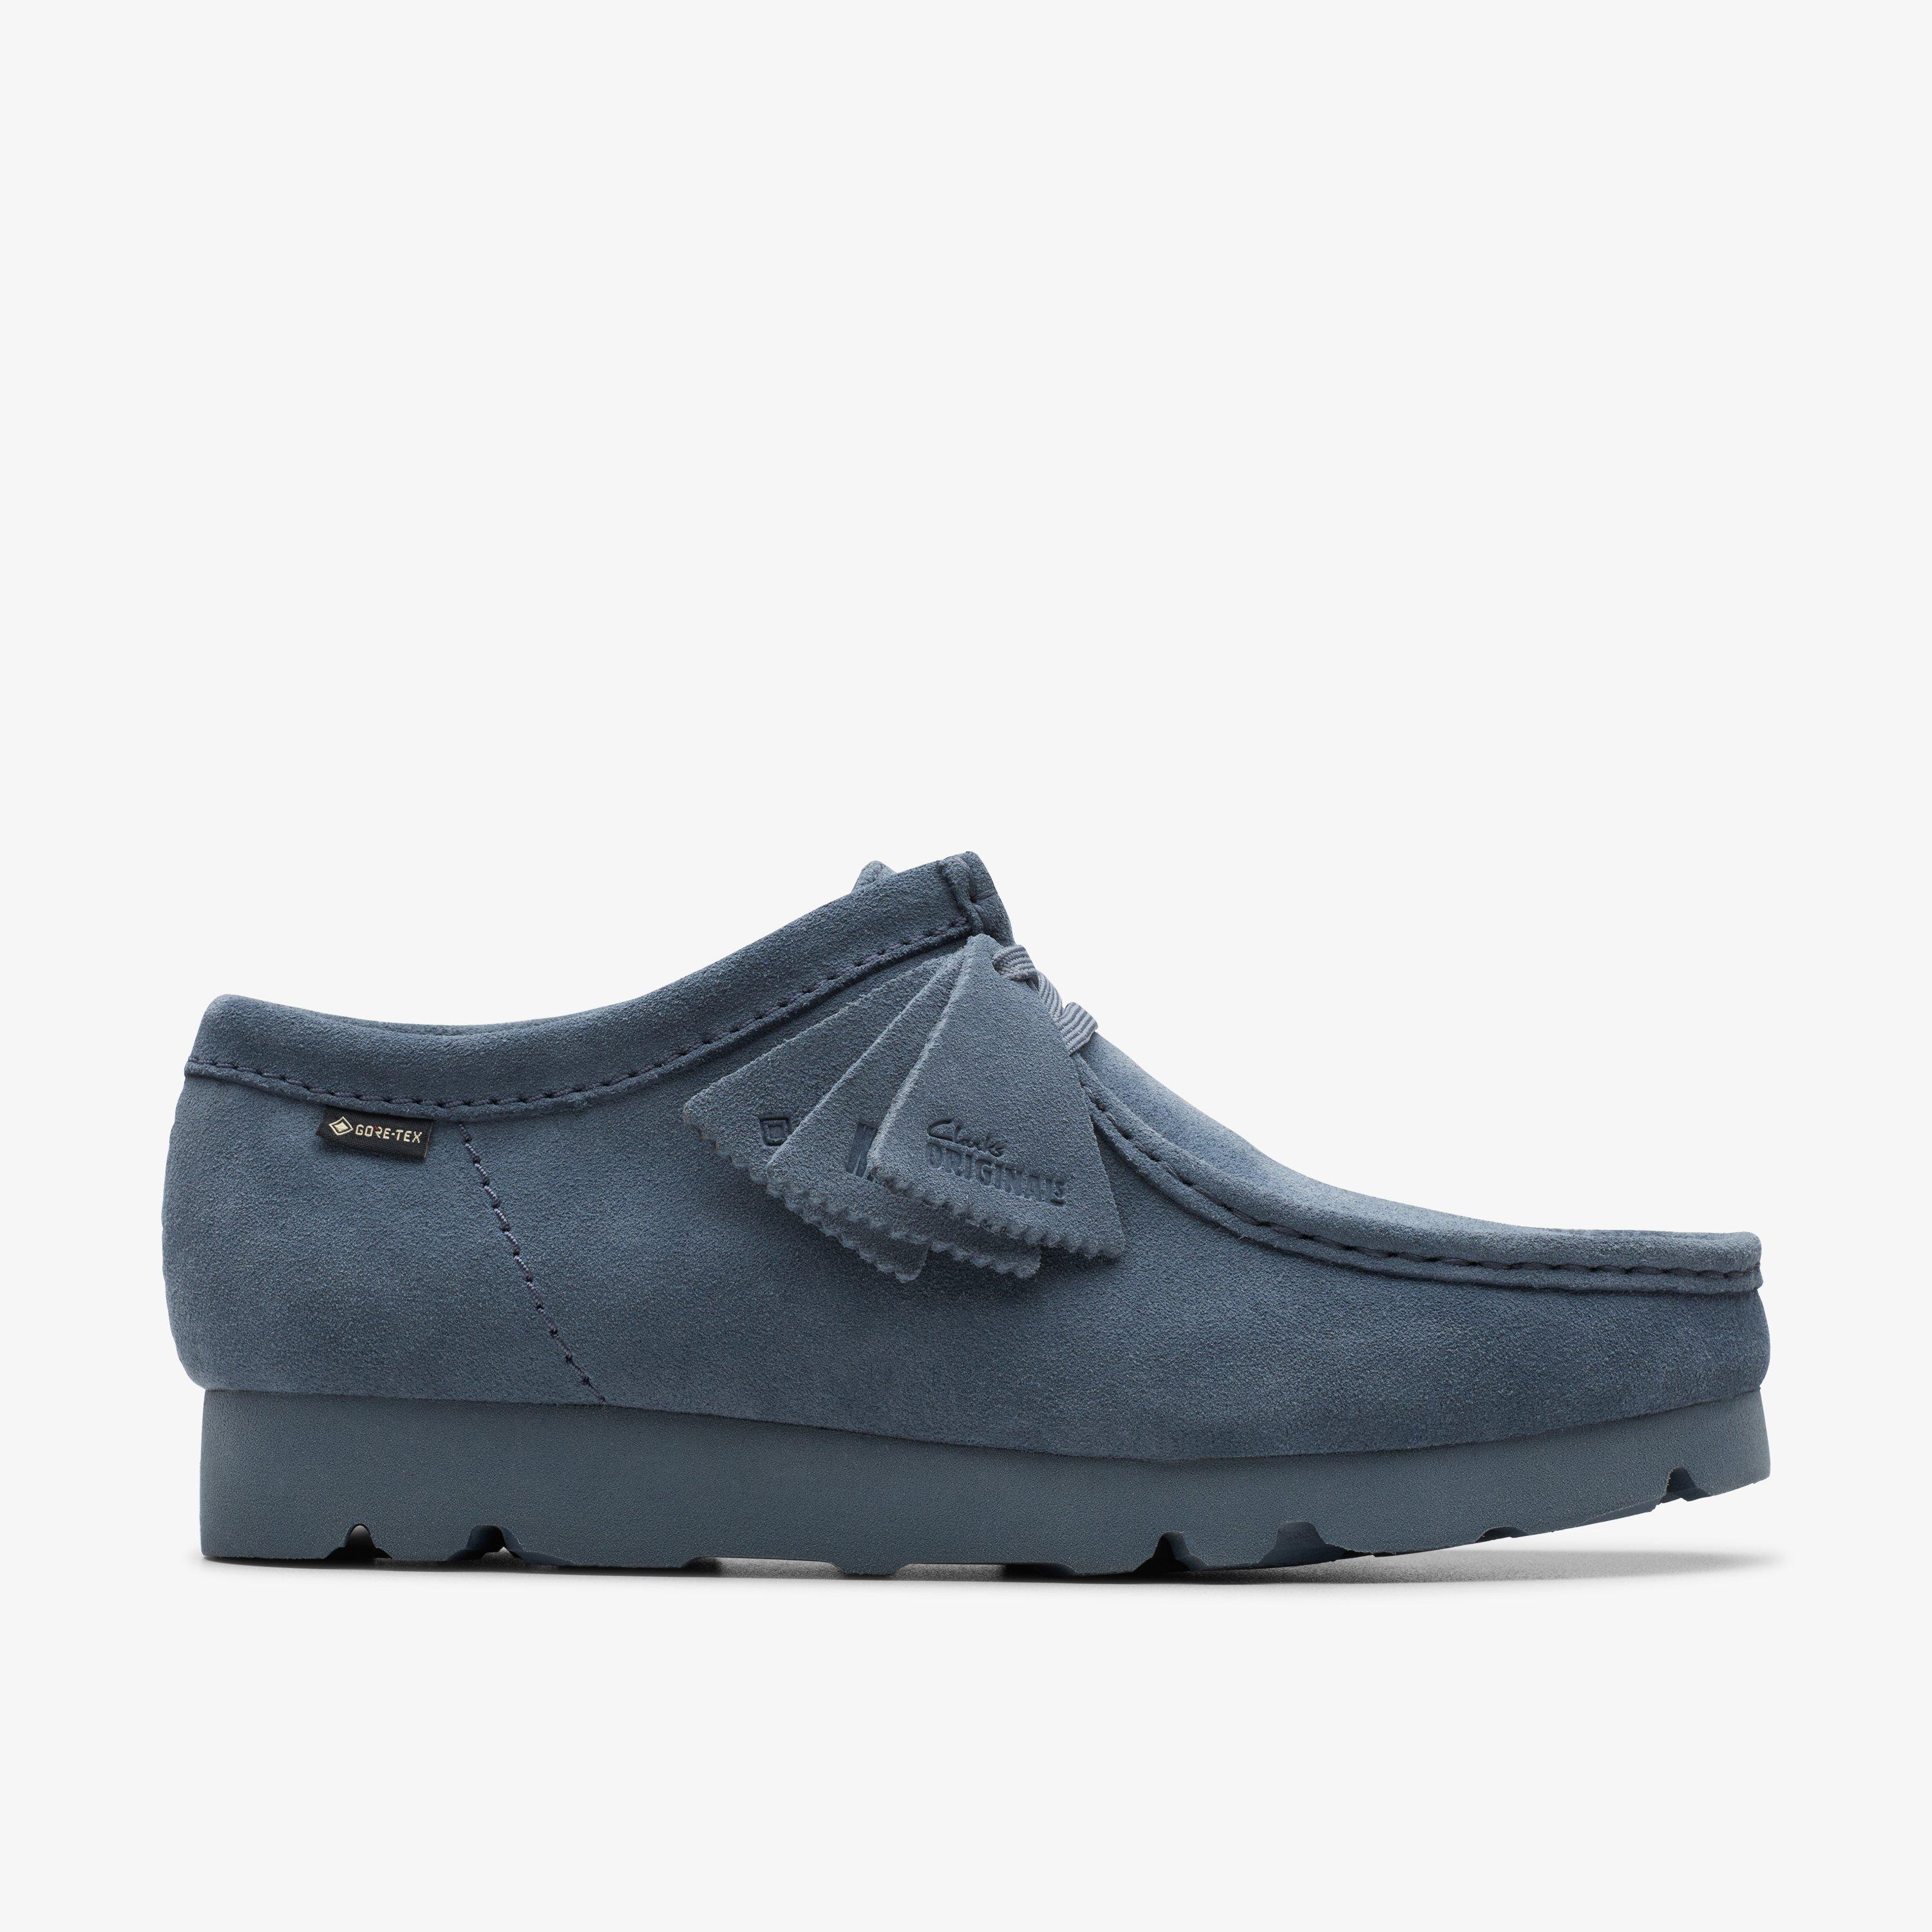 Size 12 Clarks Originals Wallabee GORE-TEX Blue/Grey Suede shoes